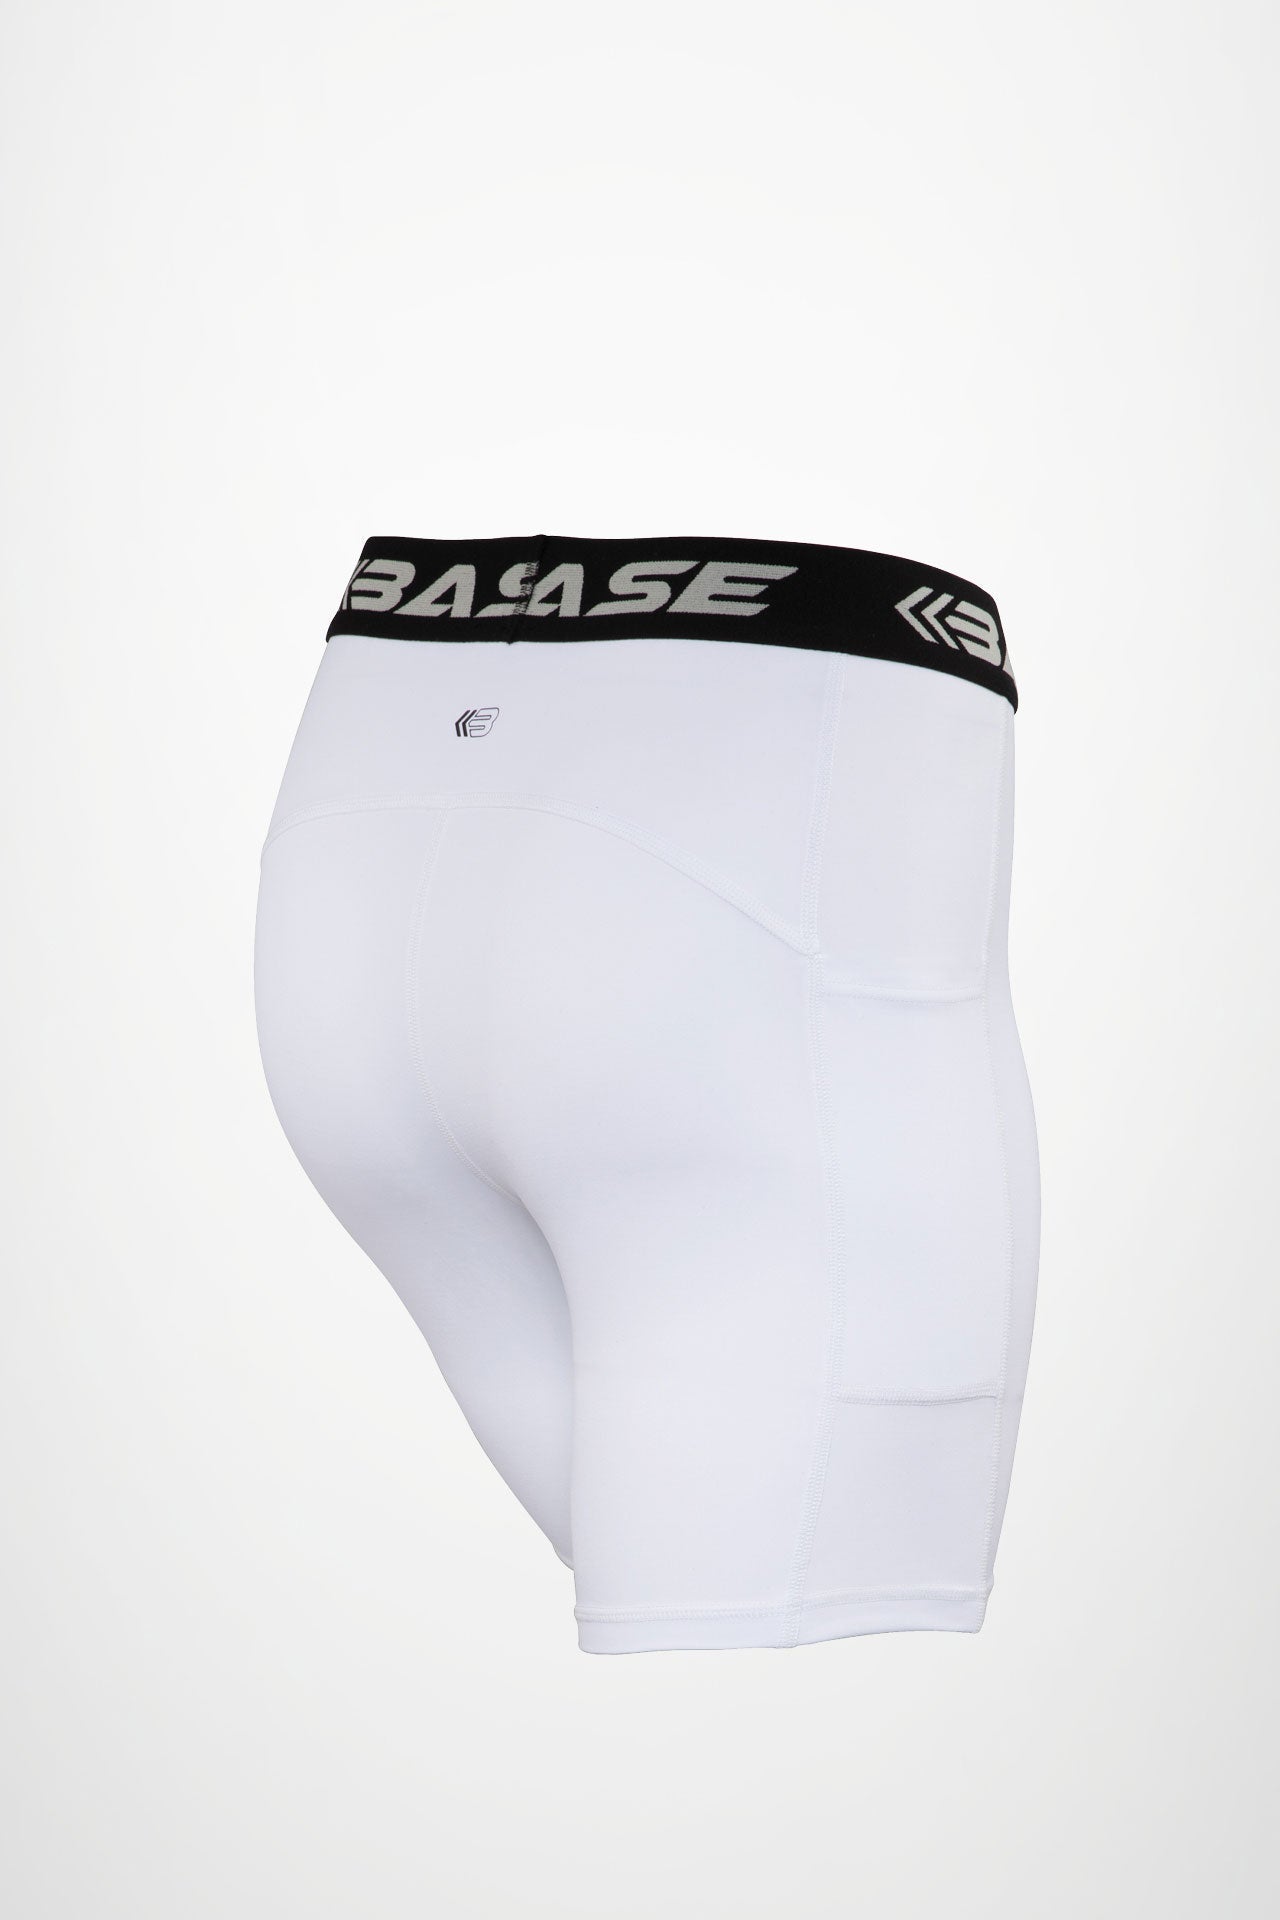 BASE Shorts BASE Women's Compression Shorts - White